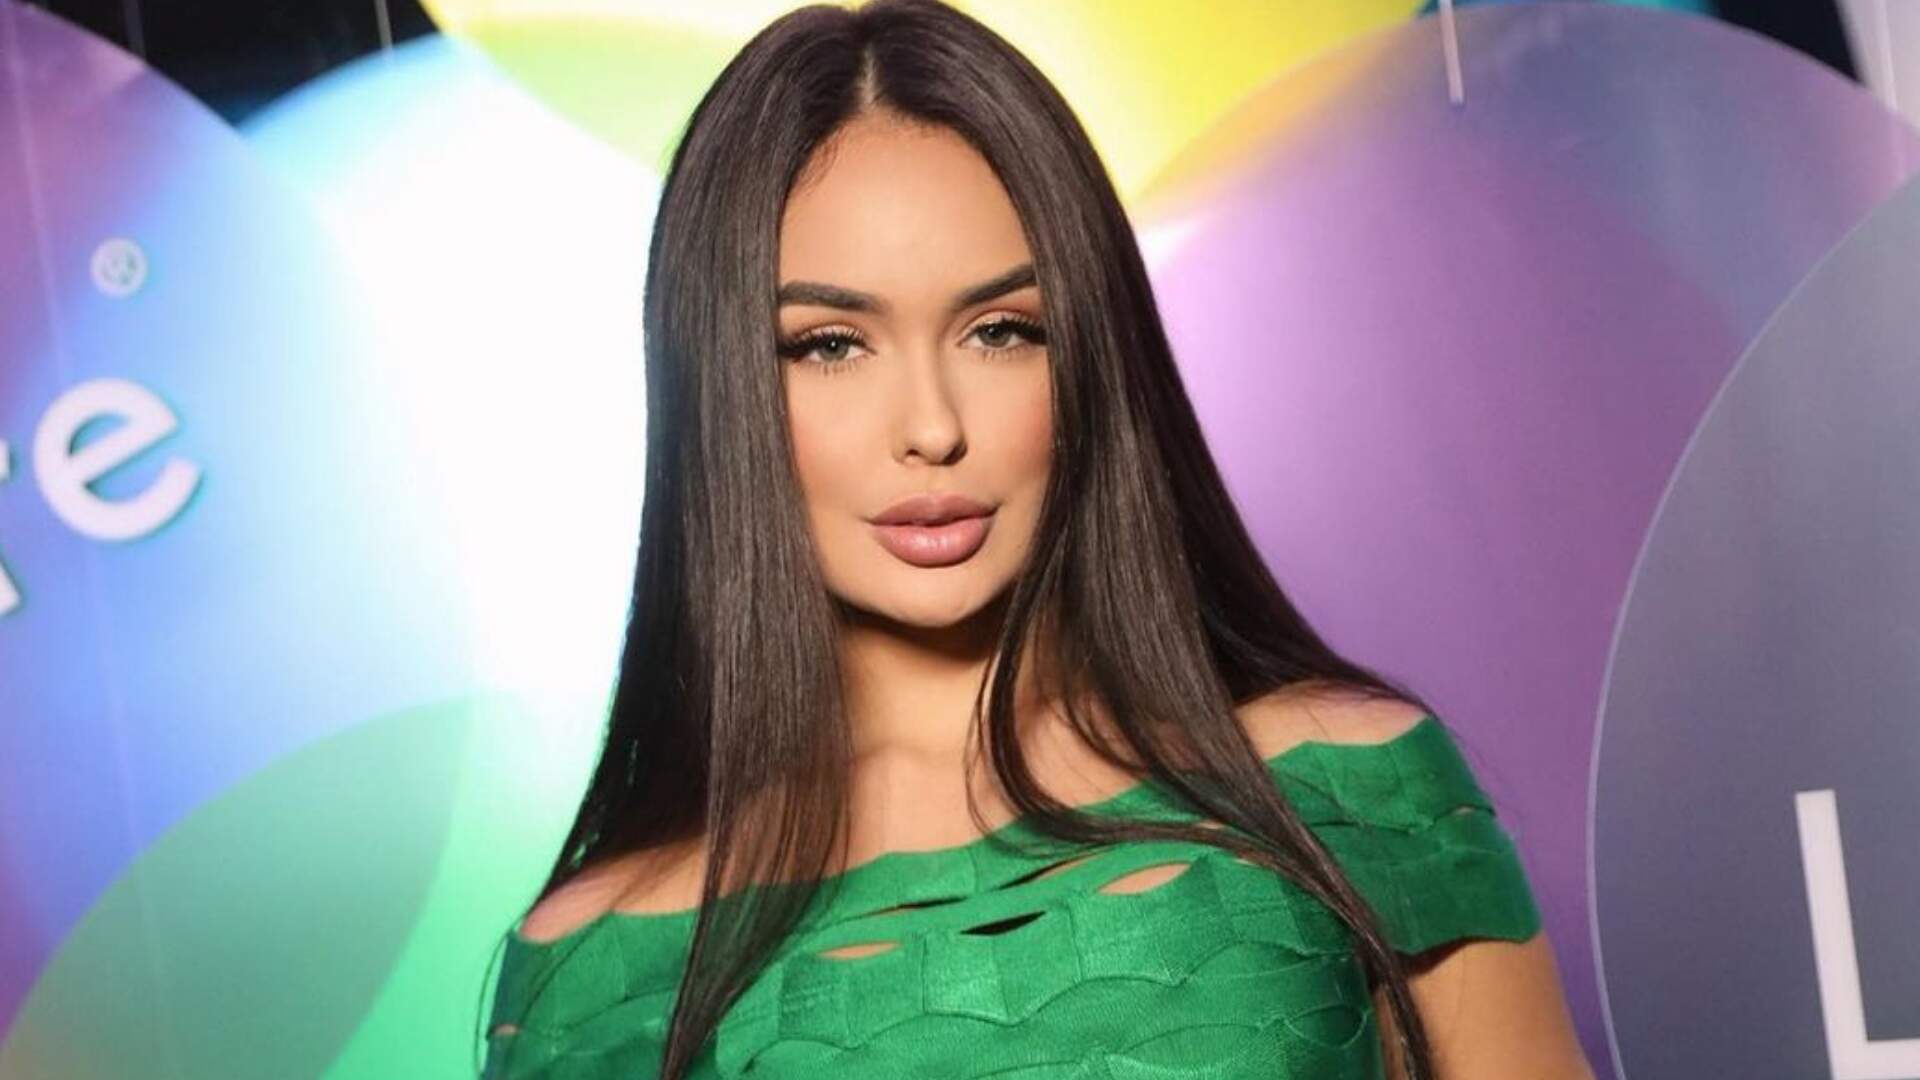 Ex-BBB Larissa Santos revela que recebeu novo convite para participar de reality show: “Eu iria” - Metropolitana FM